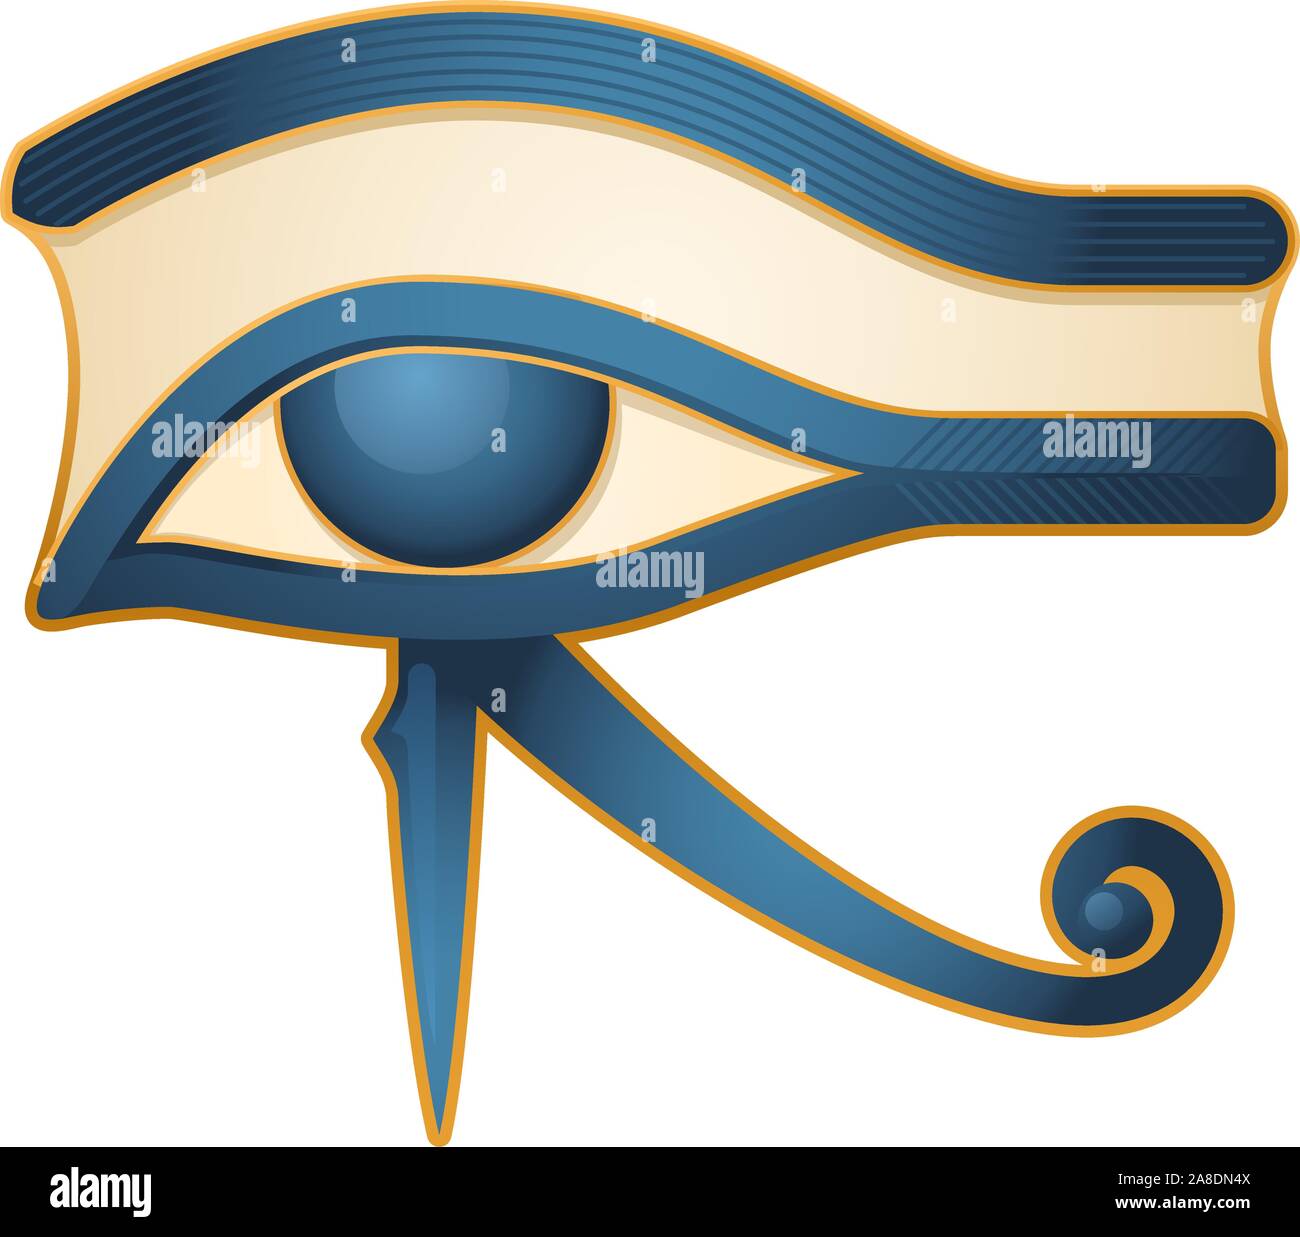 The Eye of Horus Egypt Deity, with Egyptian religious myth figure deity. Vector illustration cartoon. Stock Vector